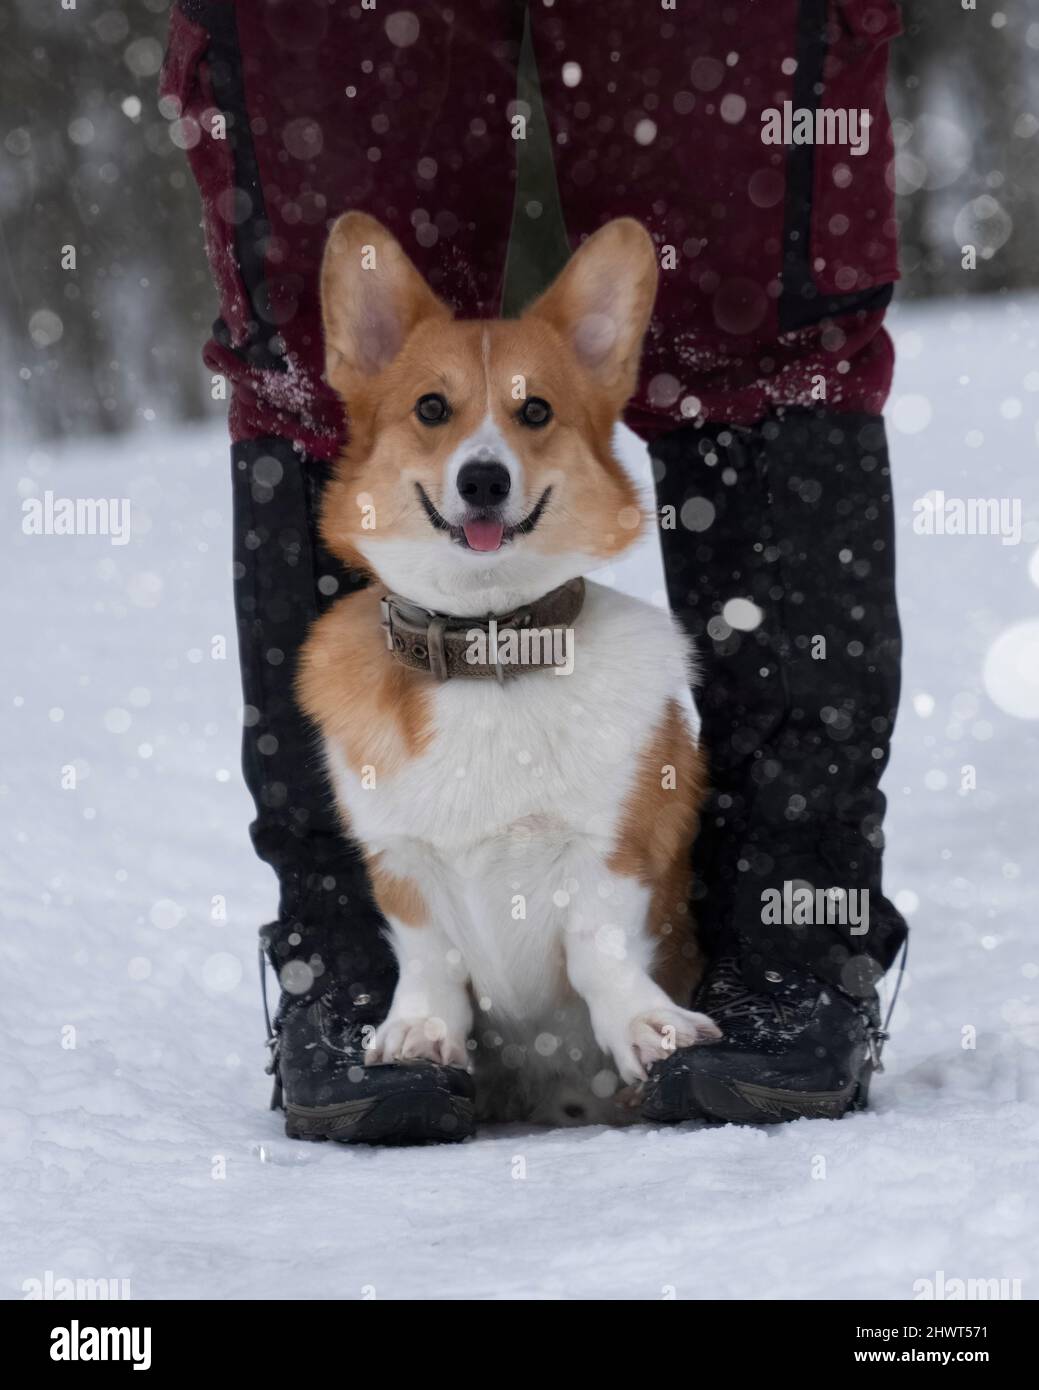 Carino gallese corgi pembroke cane seduto al proprietario dei piedi un percorso nevoso sullo sfondo di una foresta invernale gelida. Grandi orecchie. Guardando la fotocamera Foto Stock